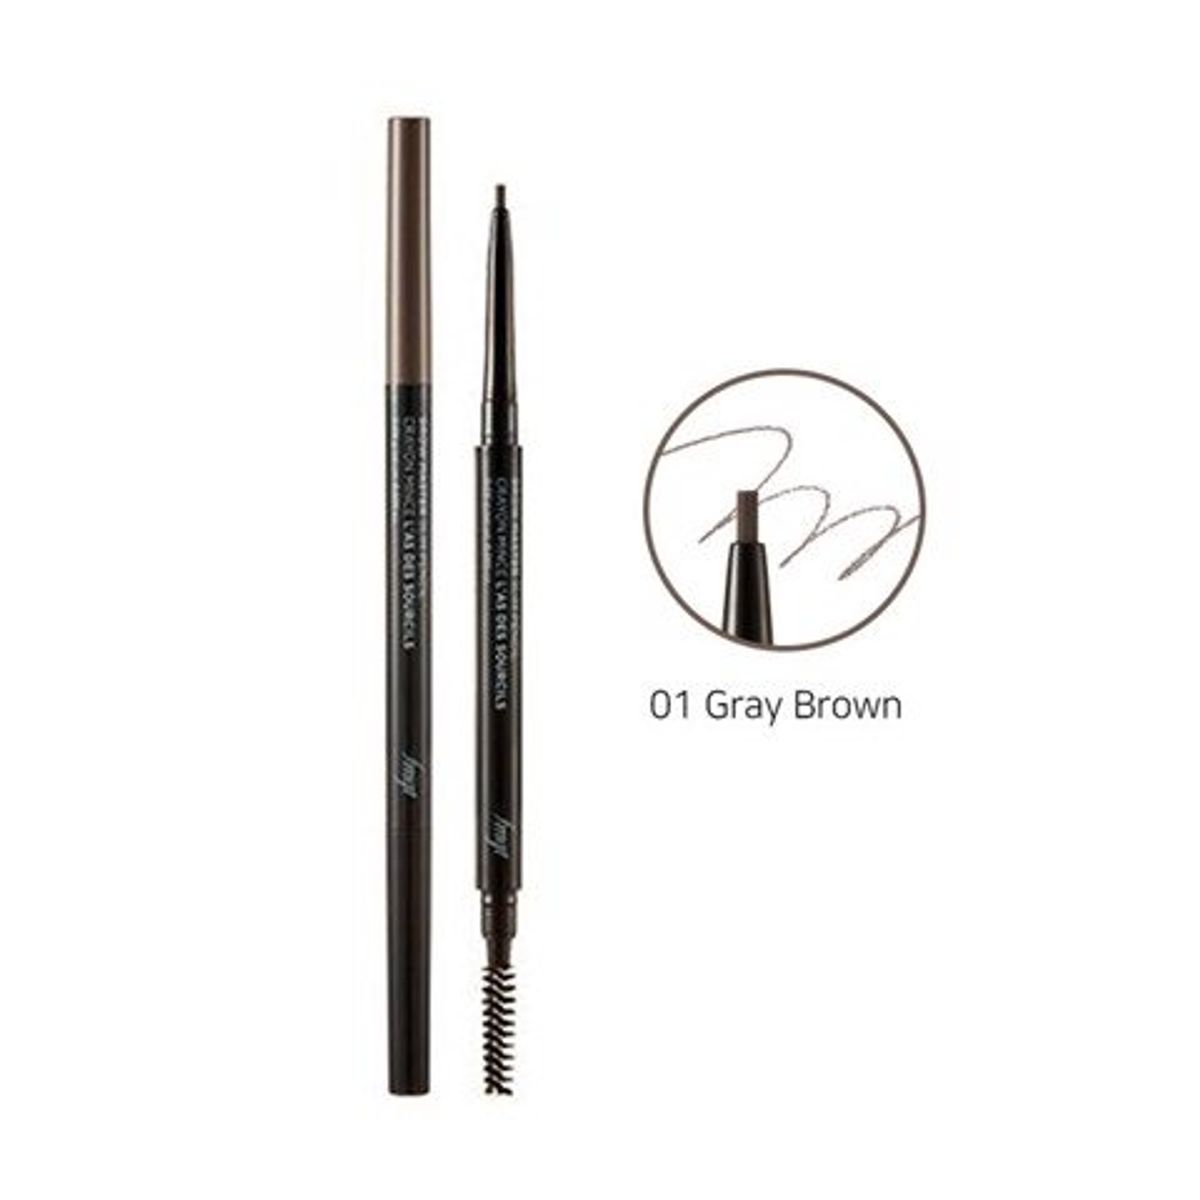 gift-fmgt-chi-ke-chan-may-sieu-manh-1-5mm-thefaceshop-brow-master-slim-pencil-01-gray-brown-0-05g-1